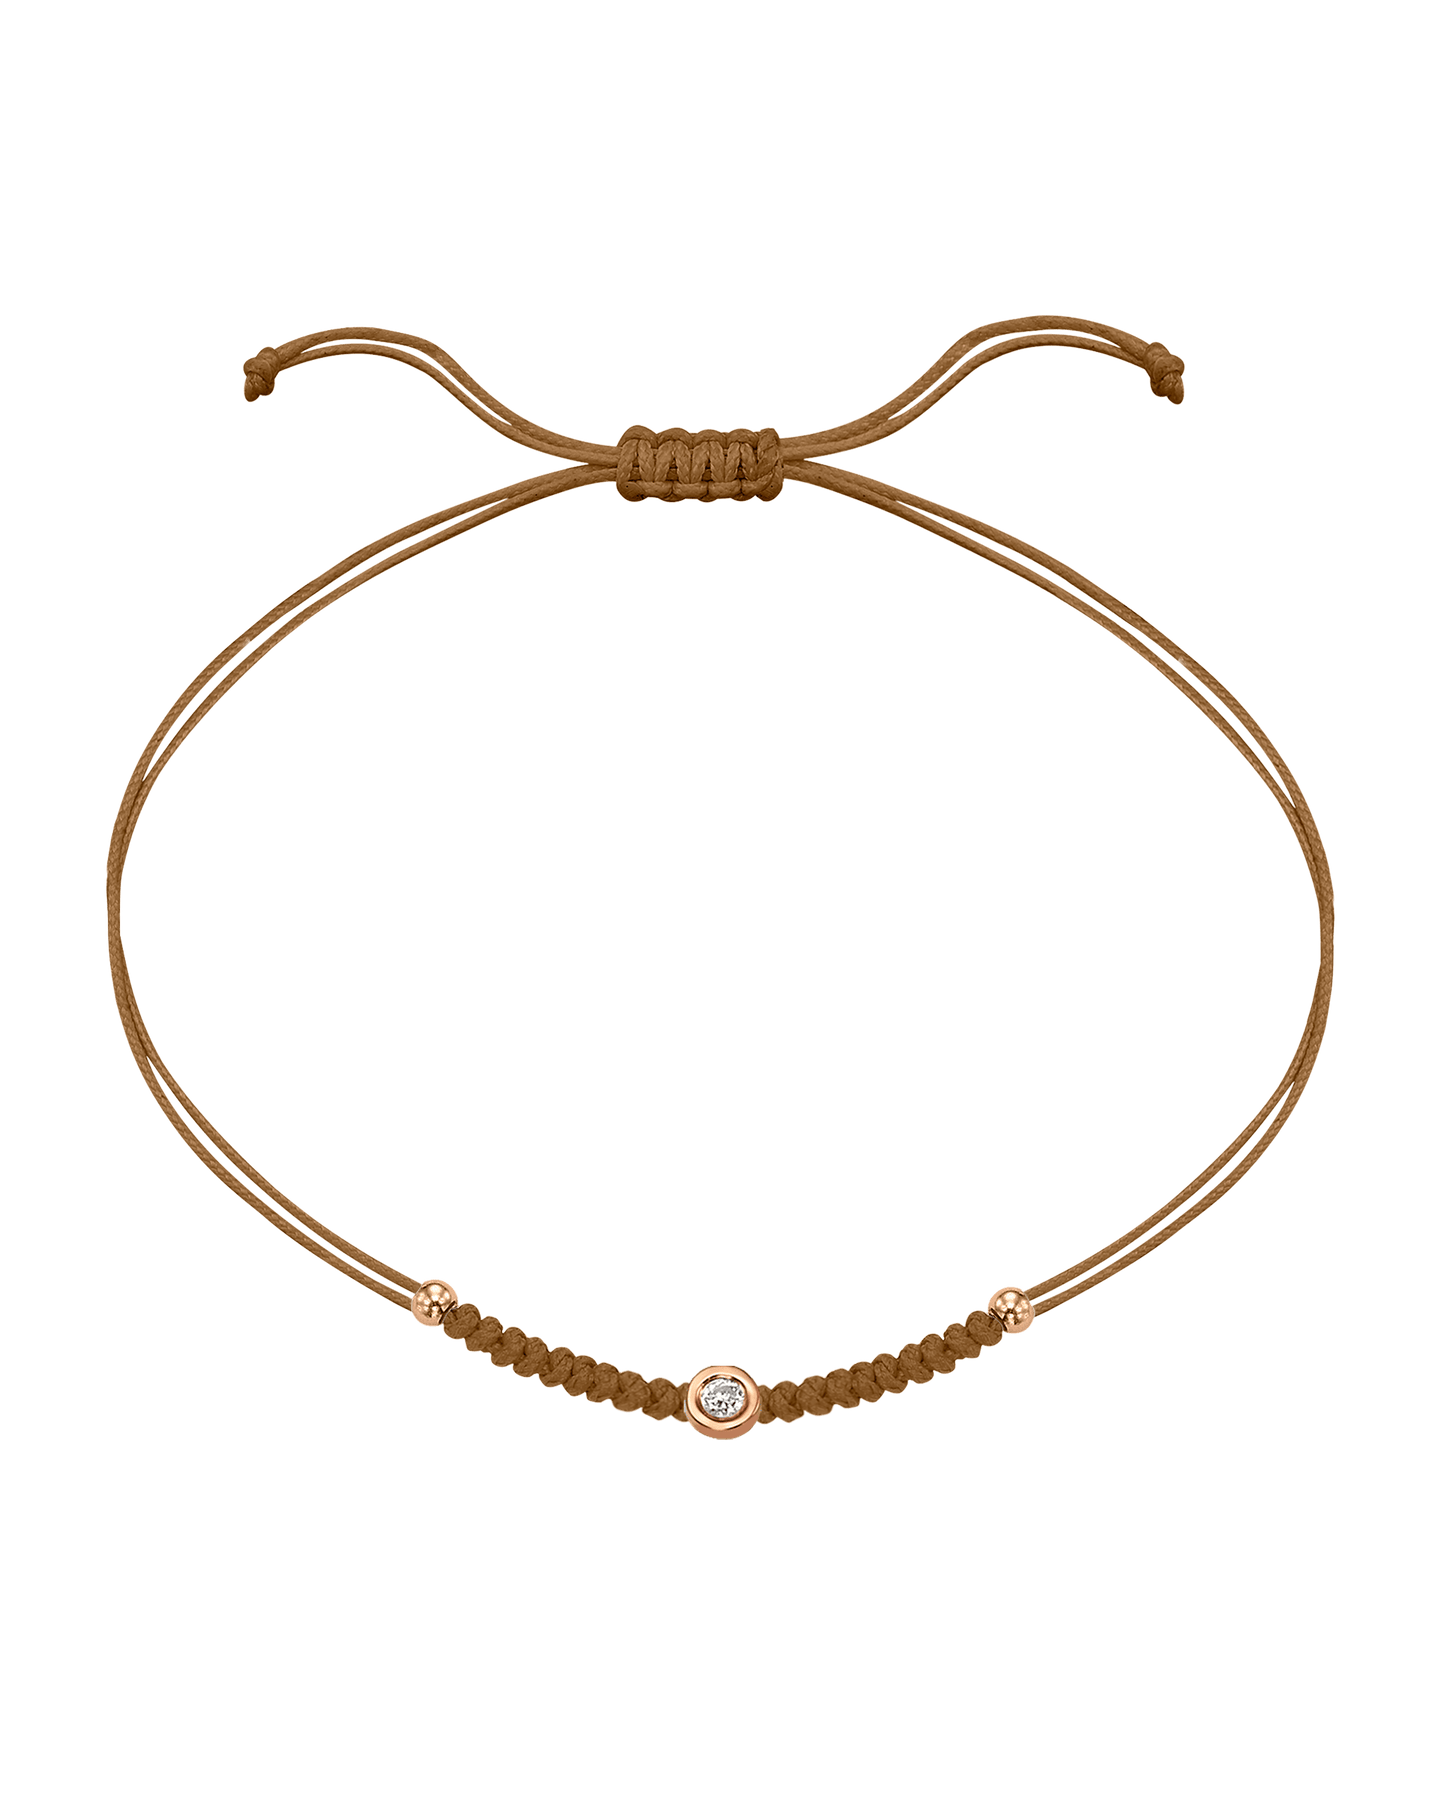 Solid Gold Sphere String of Love - 14K Rose Gold Bracelet 14K Solid Gold Camel Small: 0.03ct 